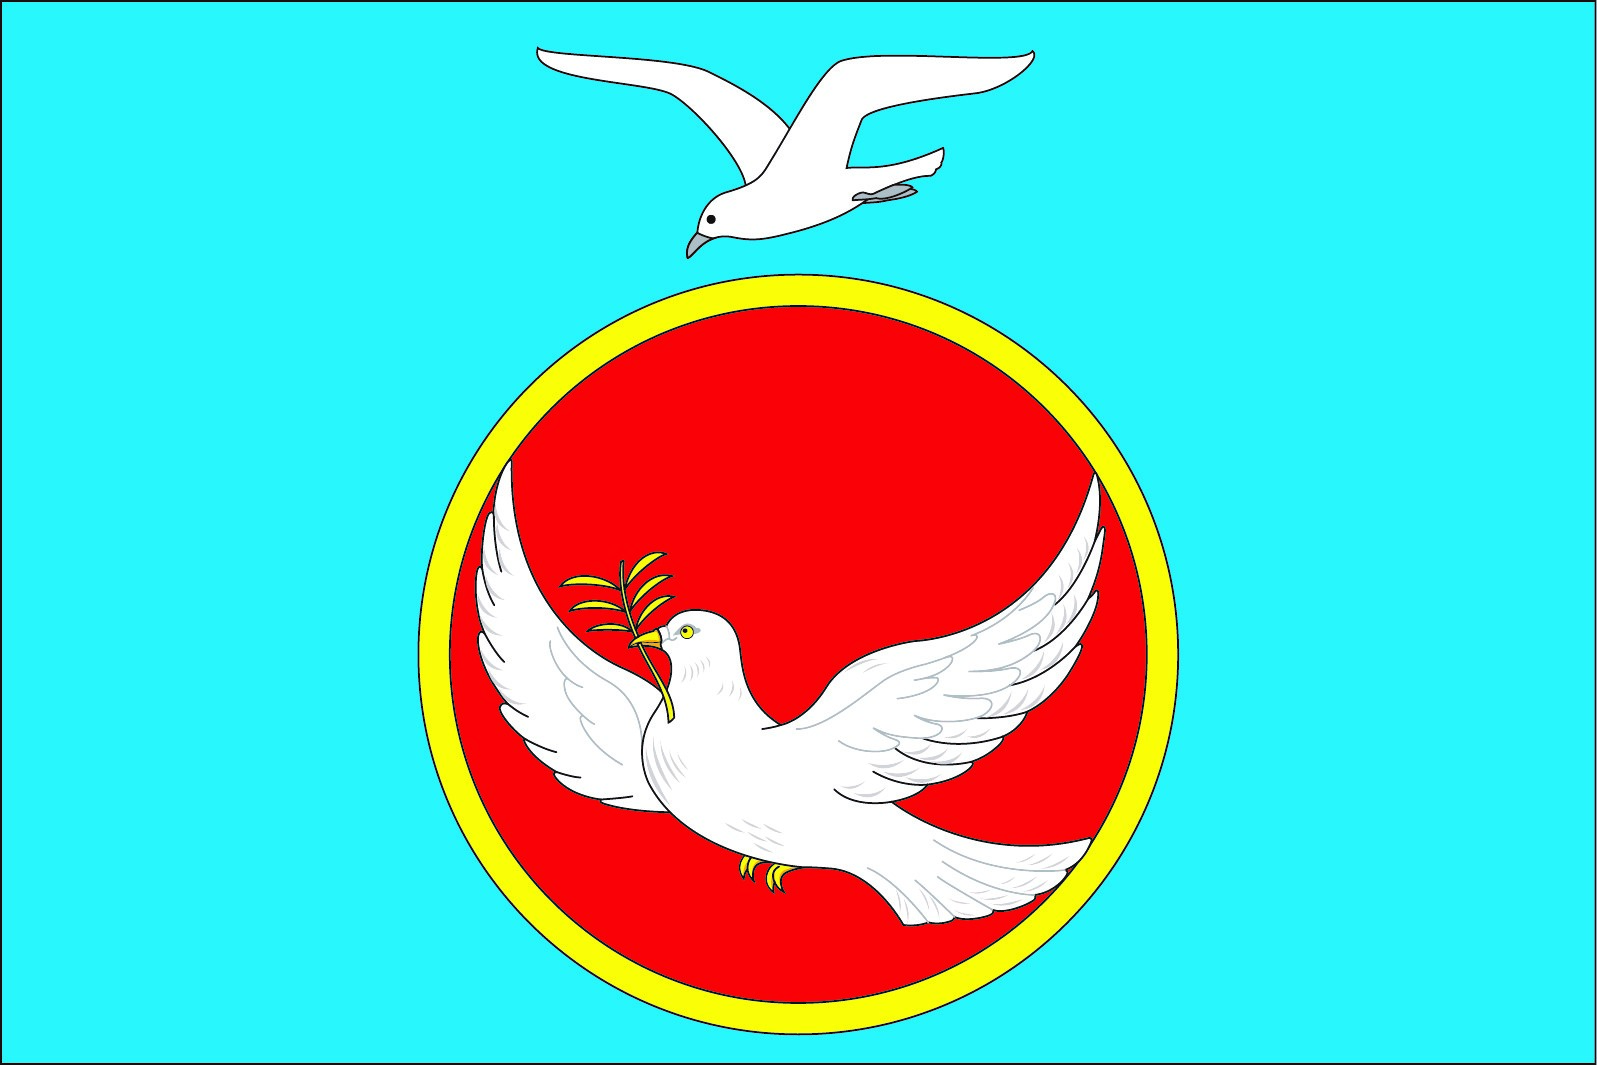 Флаг муниципального образования «Мирновское сельское поселение» Чердаклинского района Ульяновской области.